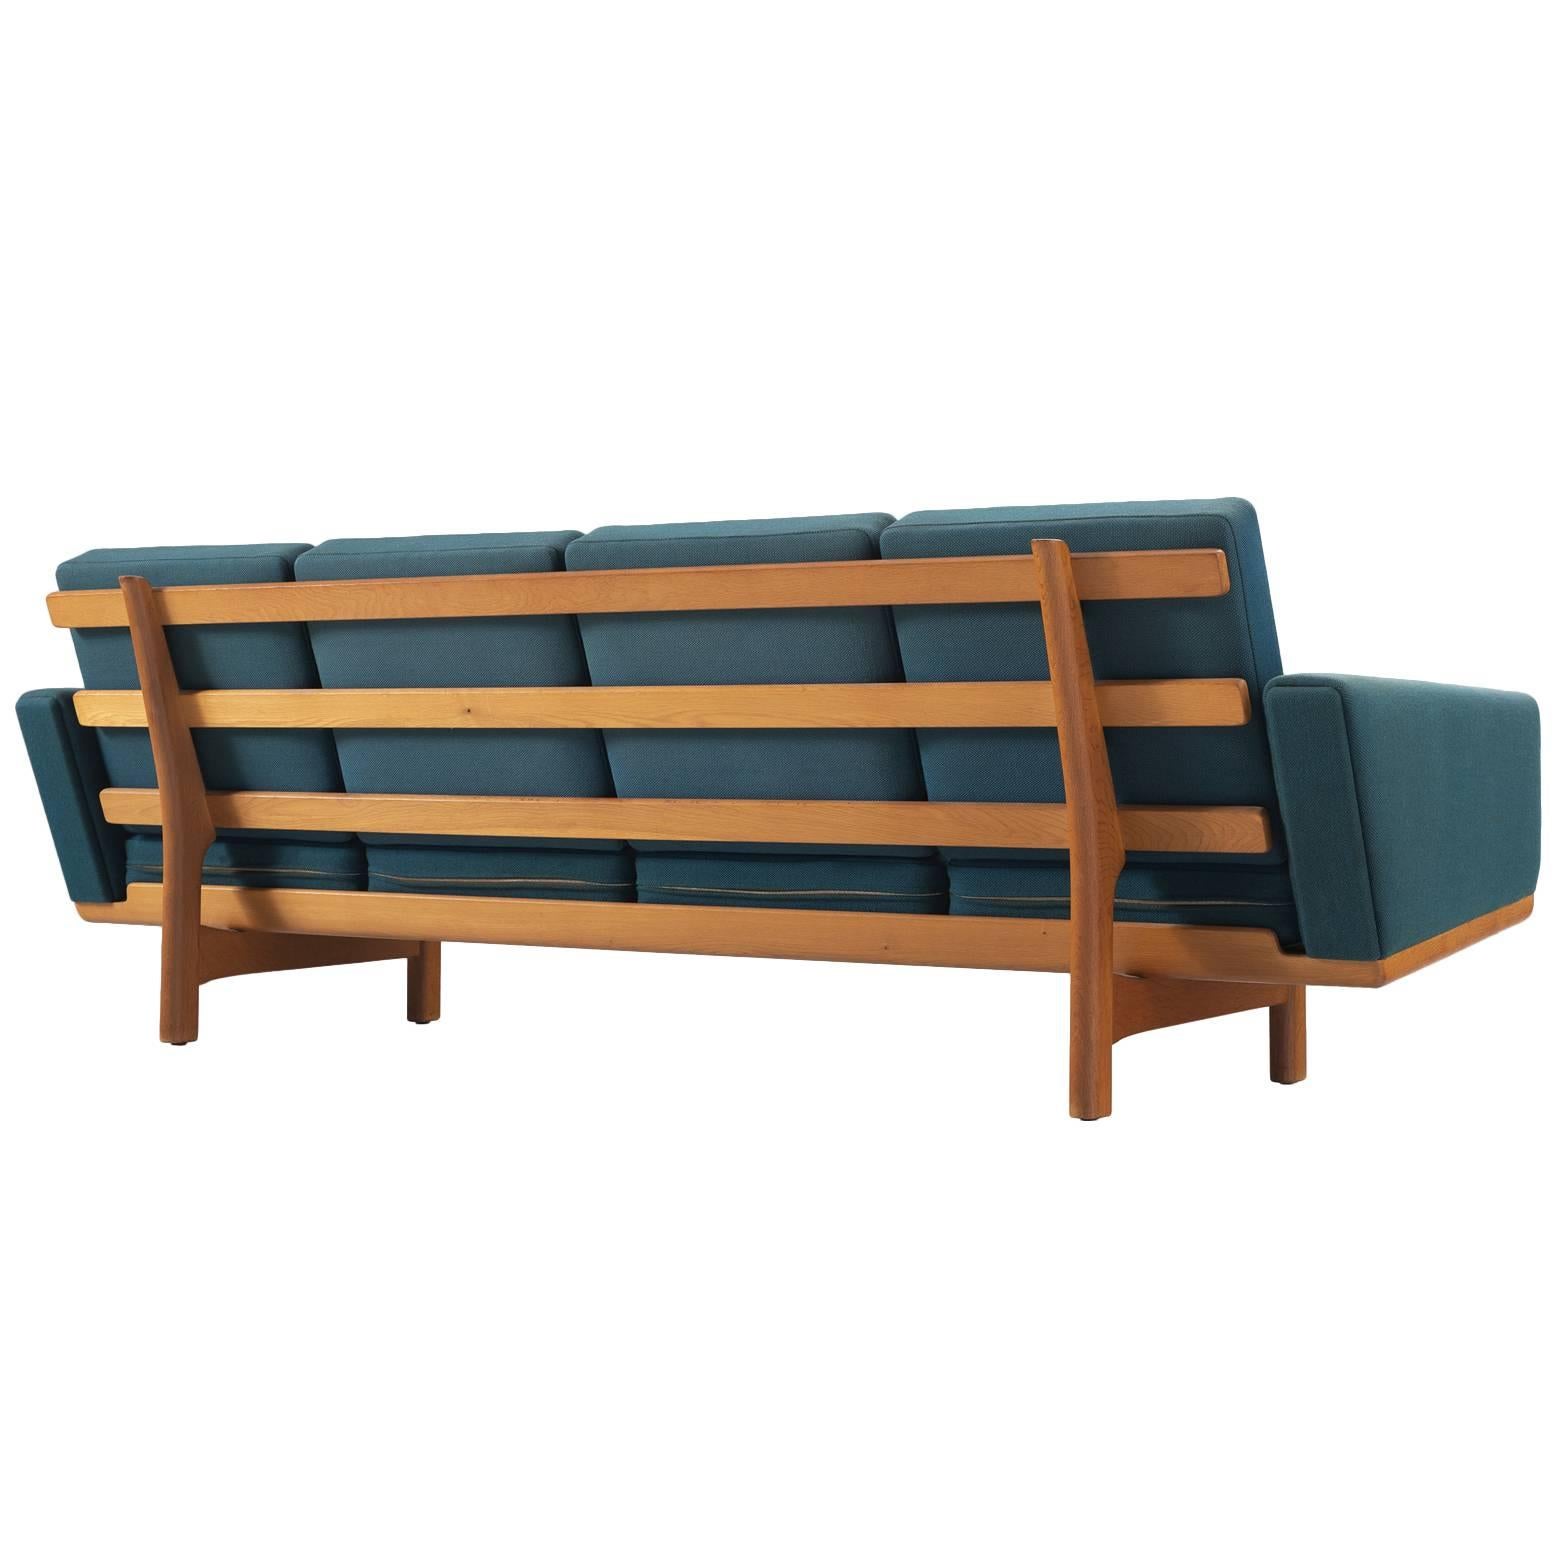 Hans Wegner Sofa in Oak and Petrol Upholstery for GETAMA